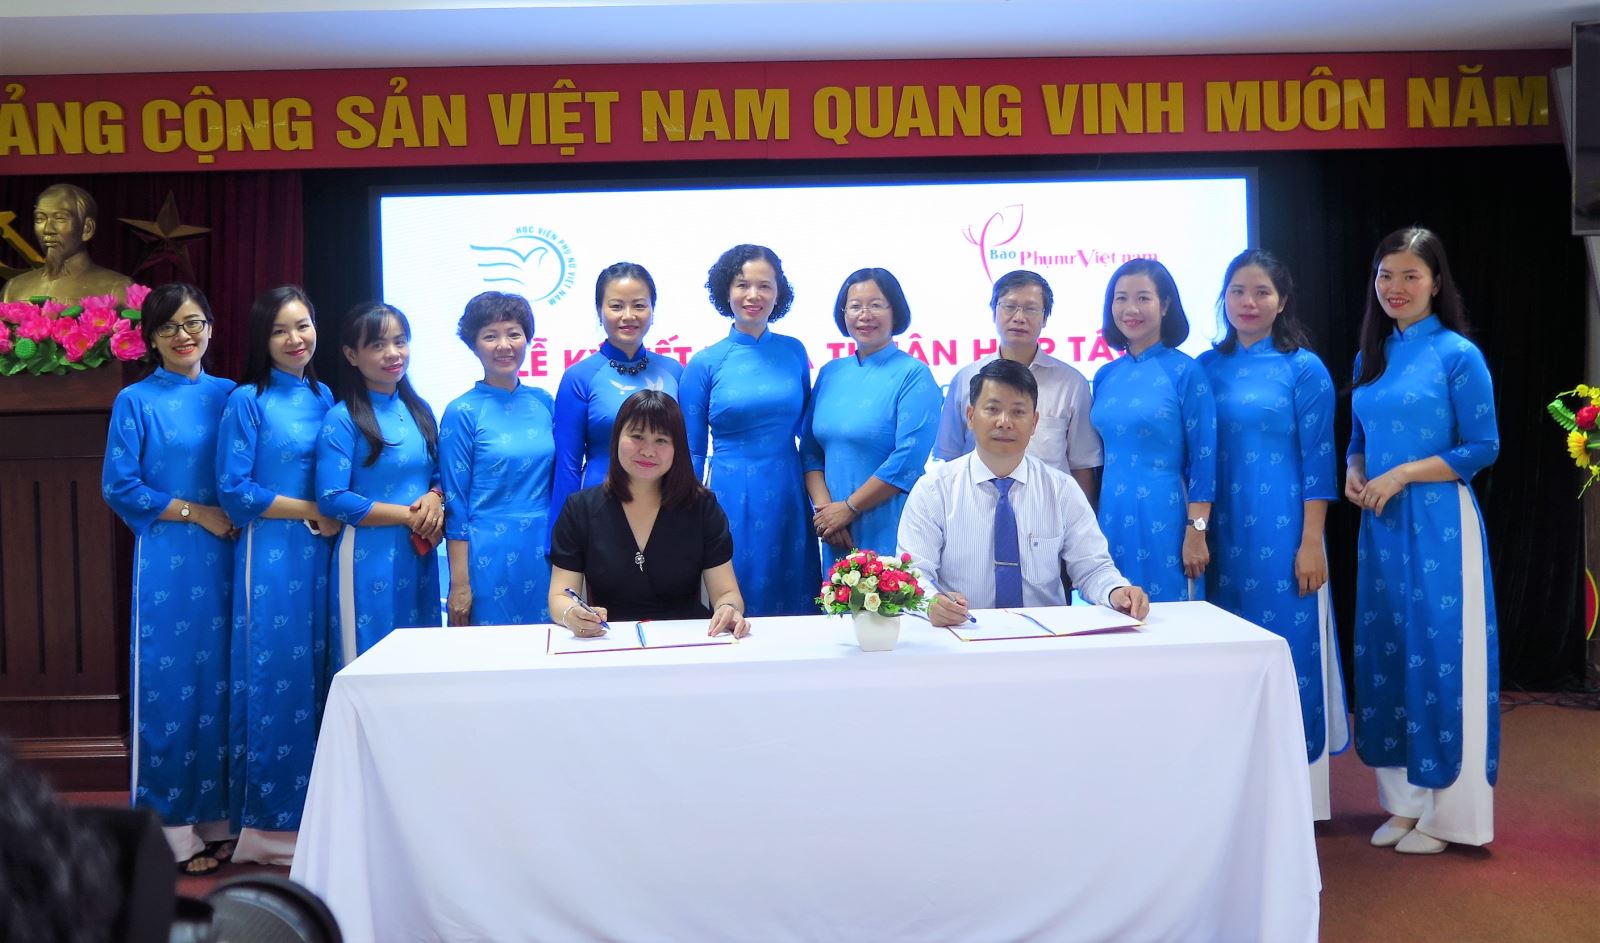 Lễ ký kết thỏa thuận hợp tác giữa Học viện Phụ nữ Việt Nam và Báo Phụ nữ Việt Nam